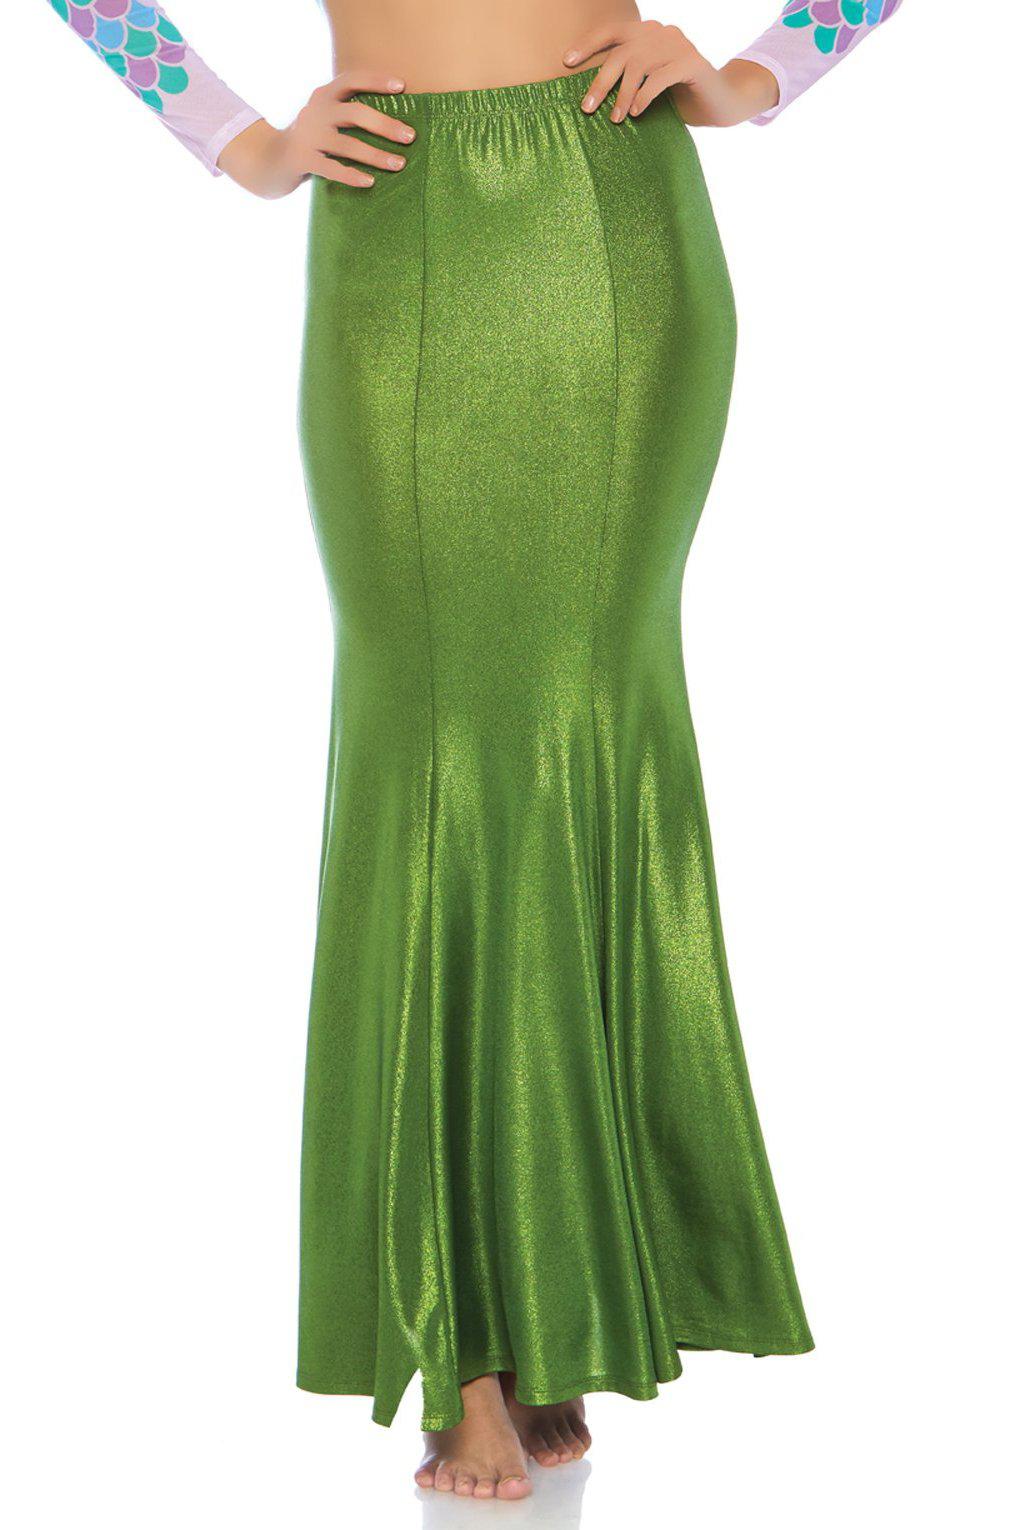 Plus Size Shimmer Spandex Mermaid Skirt-Mermaid Costumes-Leg Avenue-Green-1/2XL-SEXYSHOES.COM